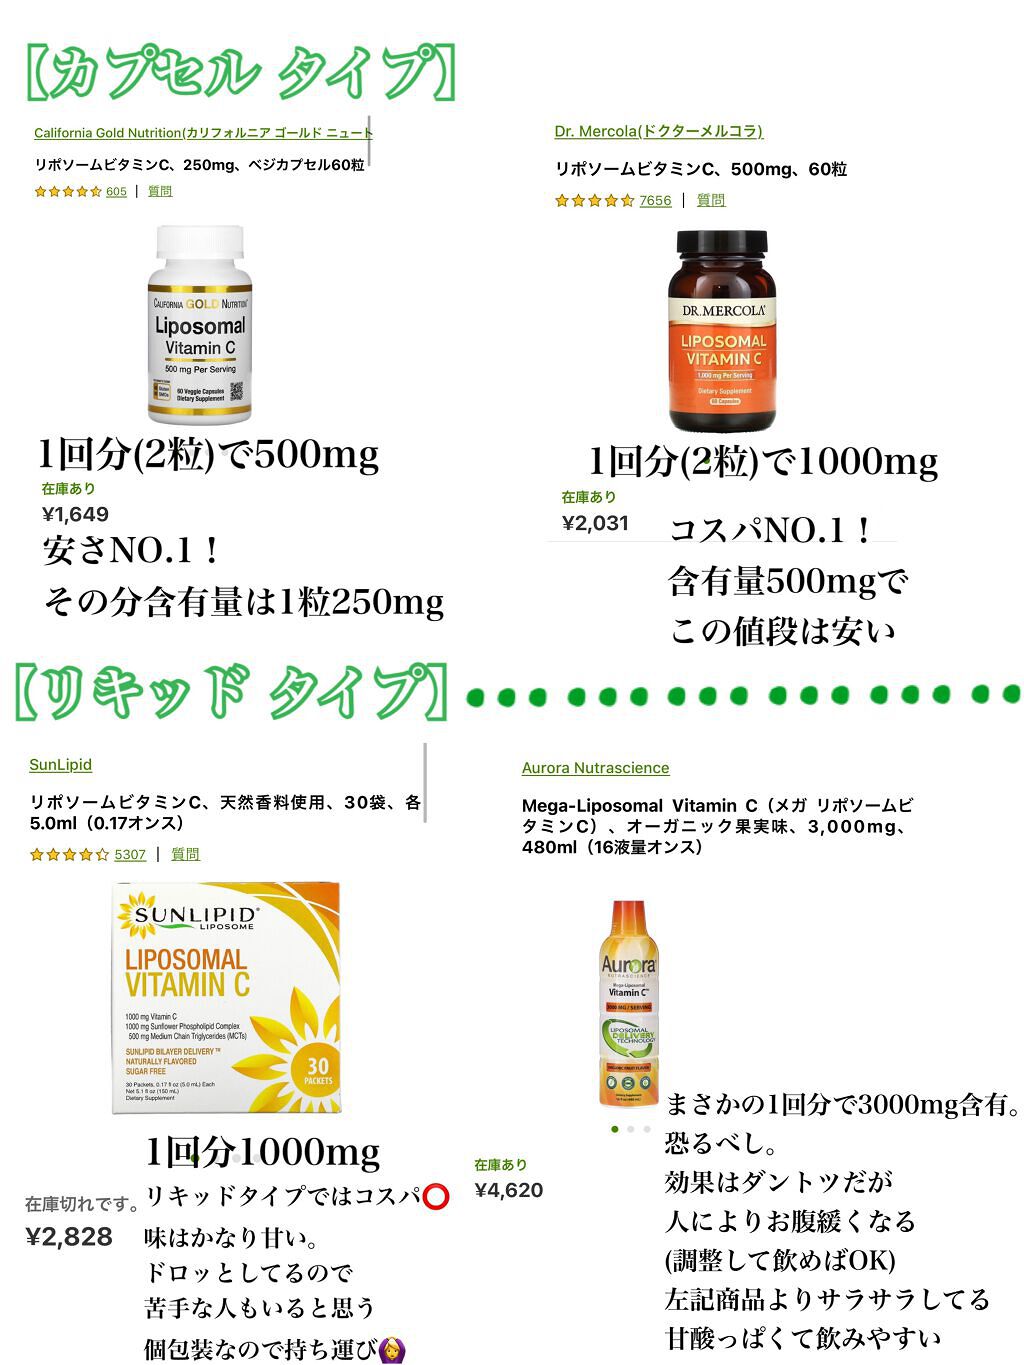 Sunlipid（サンリピド）リポソーム ビタミンC　60袋